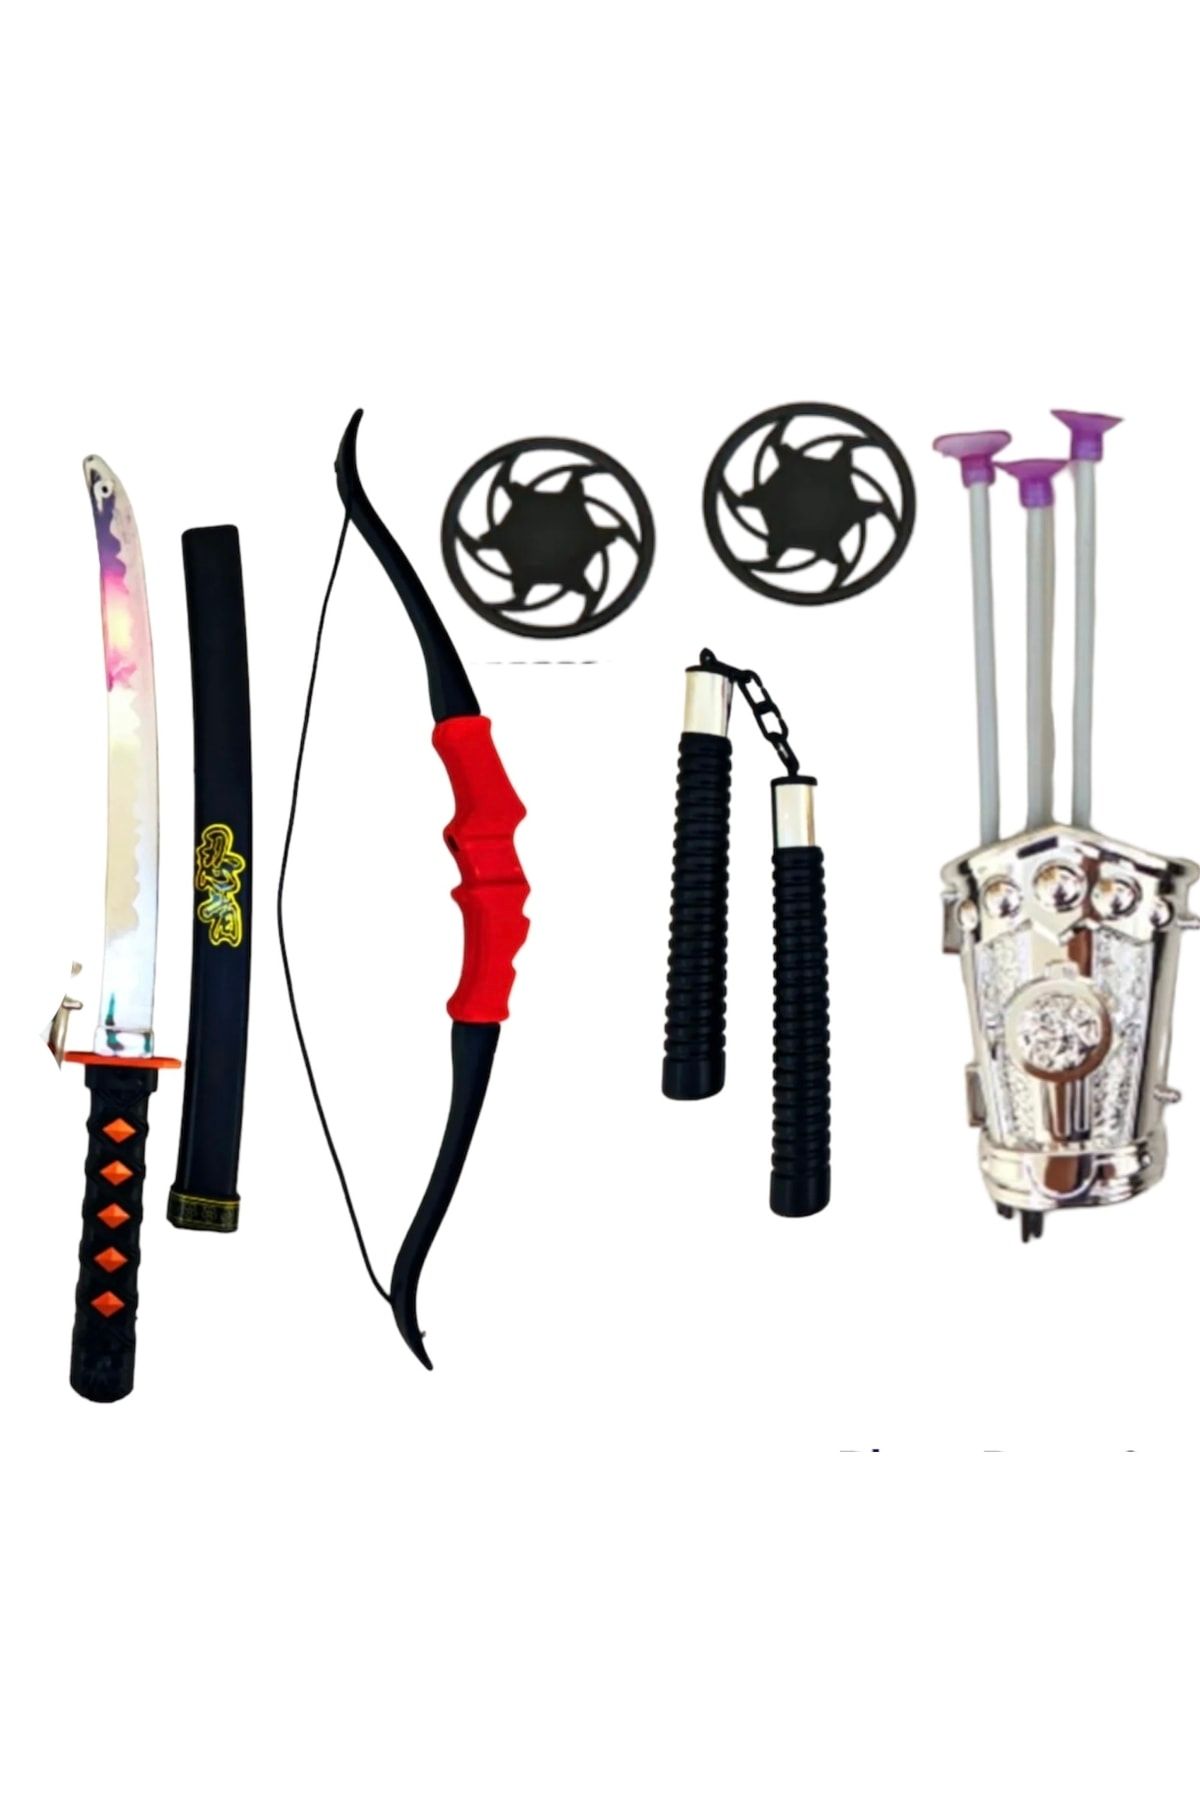 SAZE Ninja Savaş Seti Ok Yay Kılıç Kalkan Mınçıka Ninja Yıldız Fırlatma Bıçağı 10 Parça